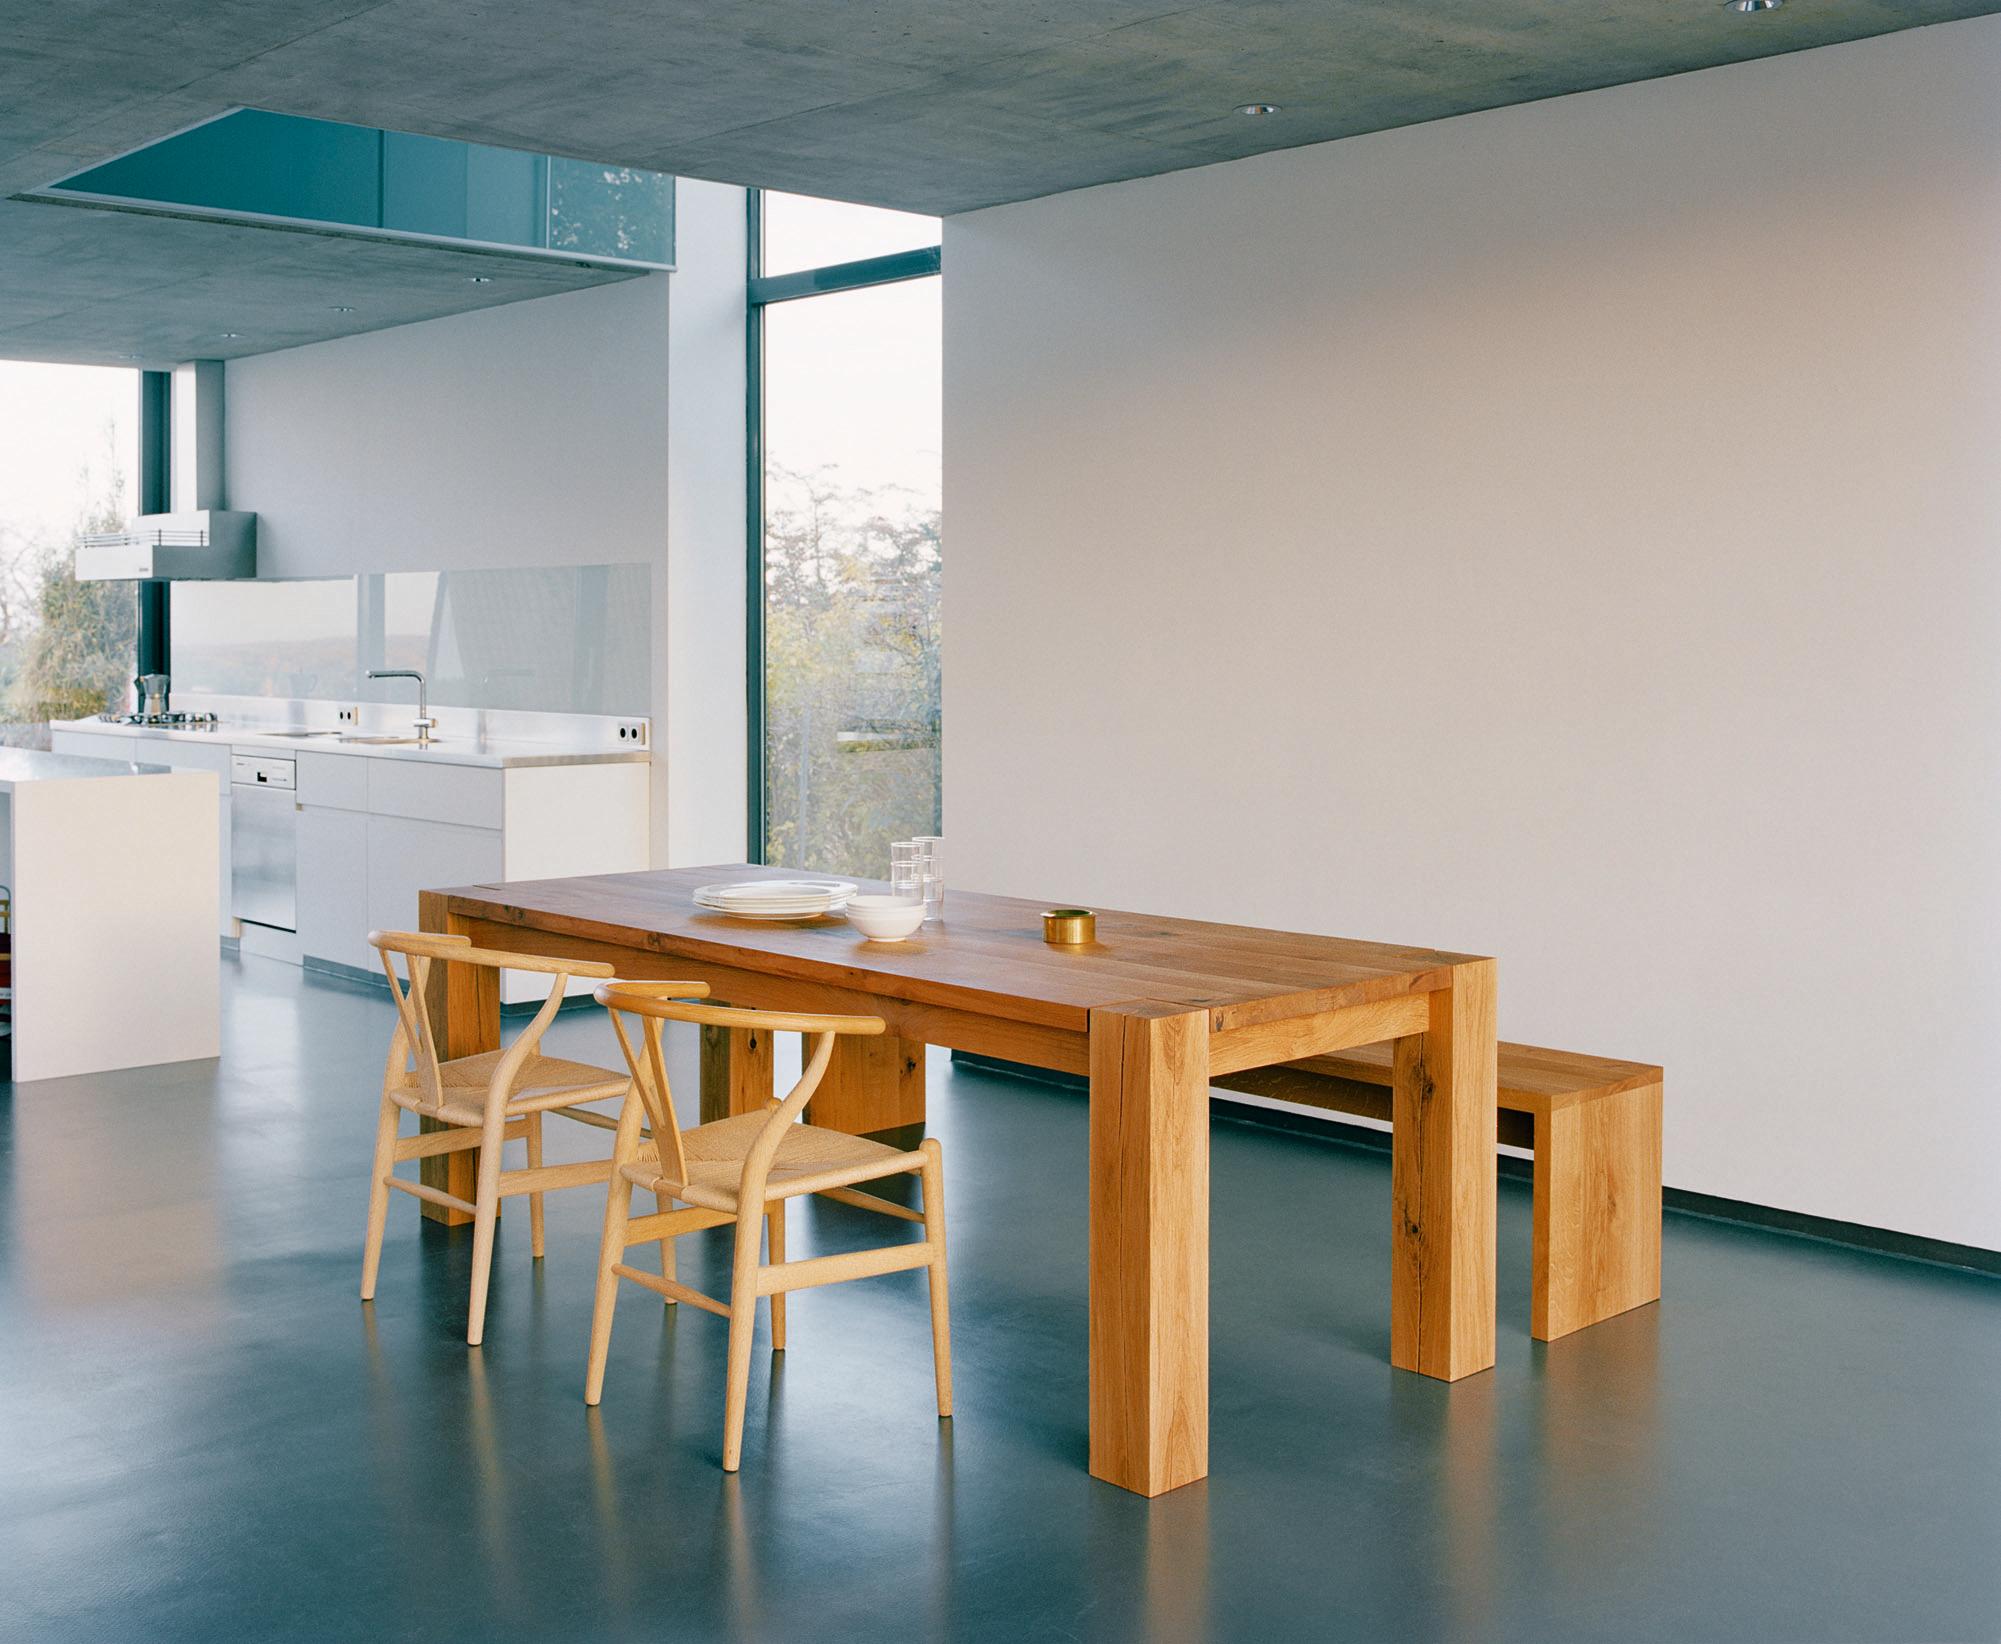 Wishbone Chair trifft Massivholztisch #küche #holztisch #esstisch #holzbank #minimalistisch #panoramafenster #zimmergestaltung ©E15